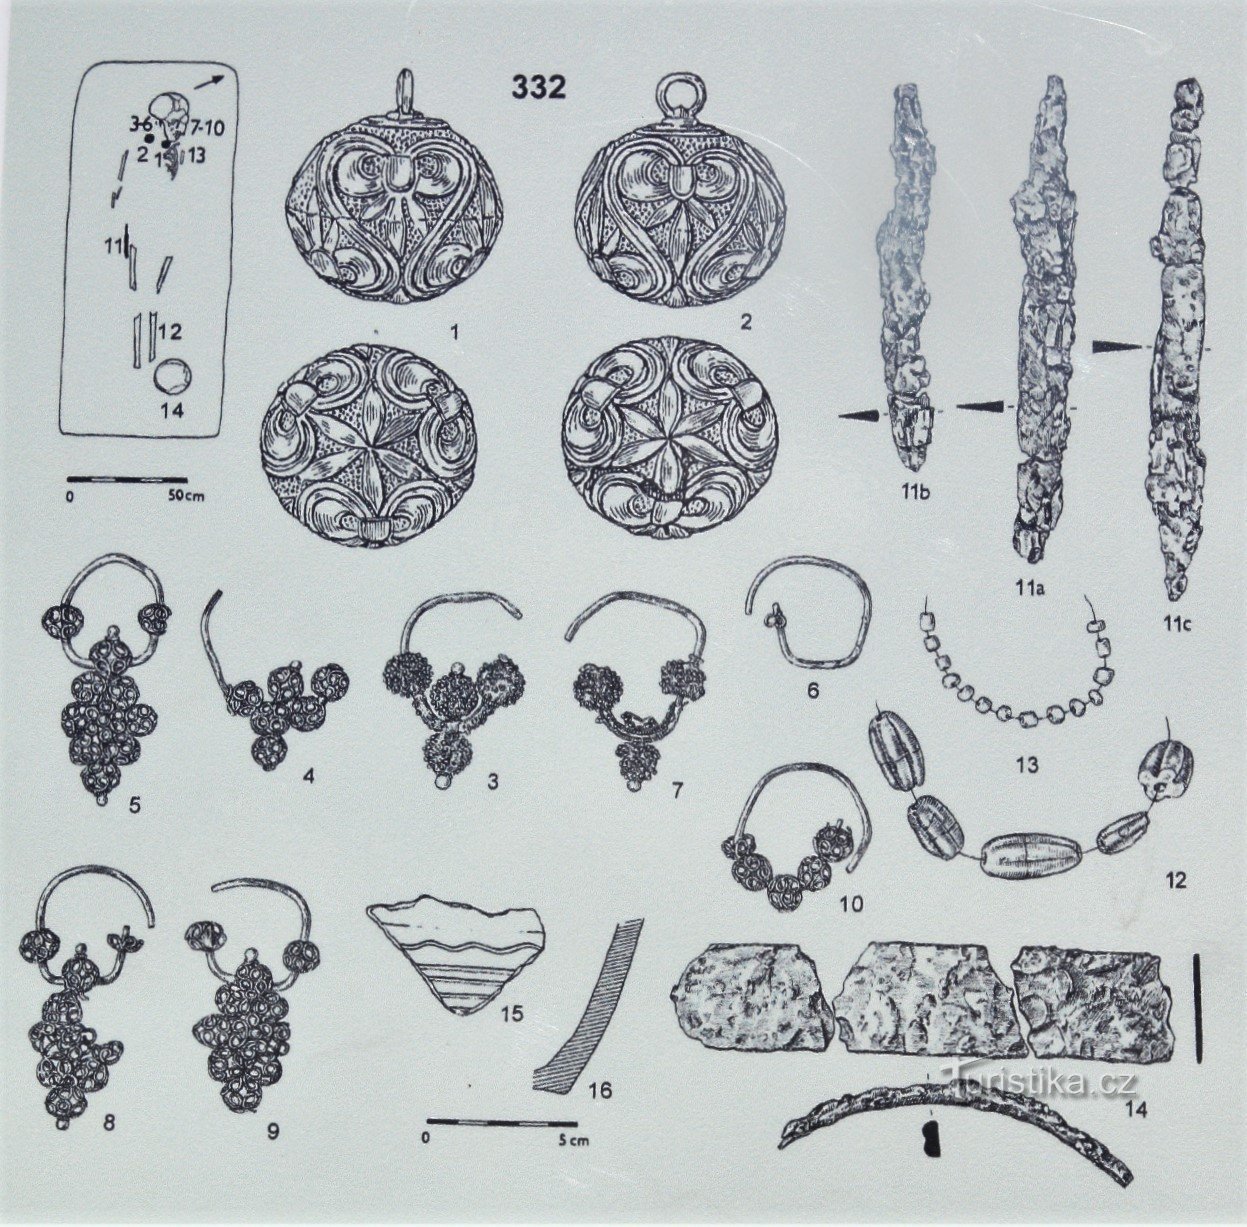 Descobertas de joias das escavações aqui (retiradas do painel de informações)